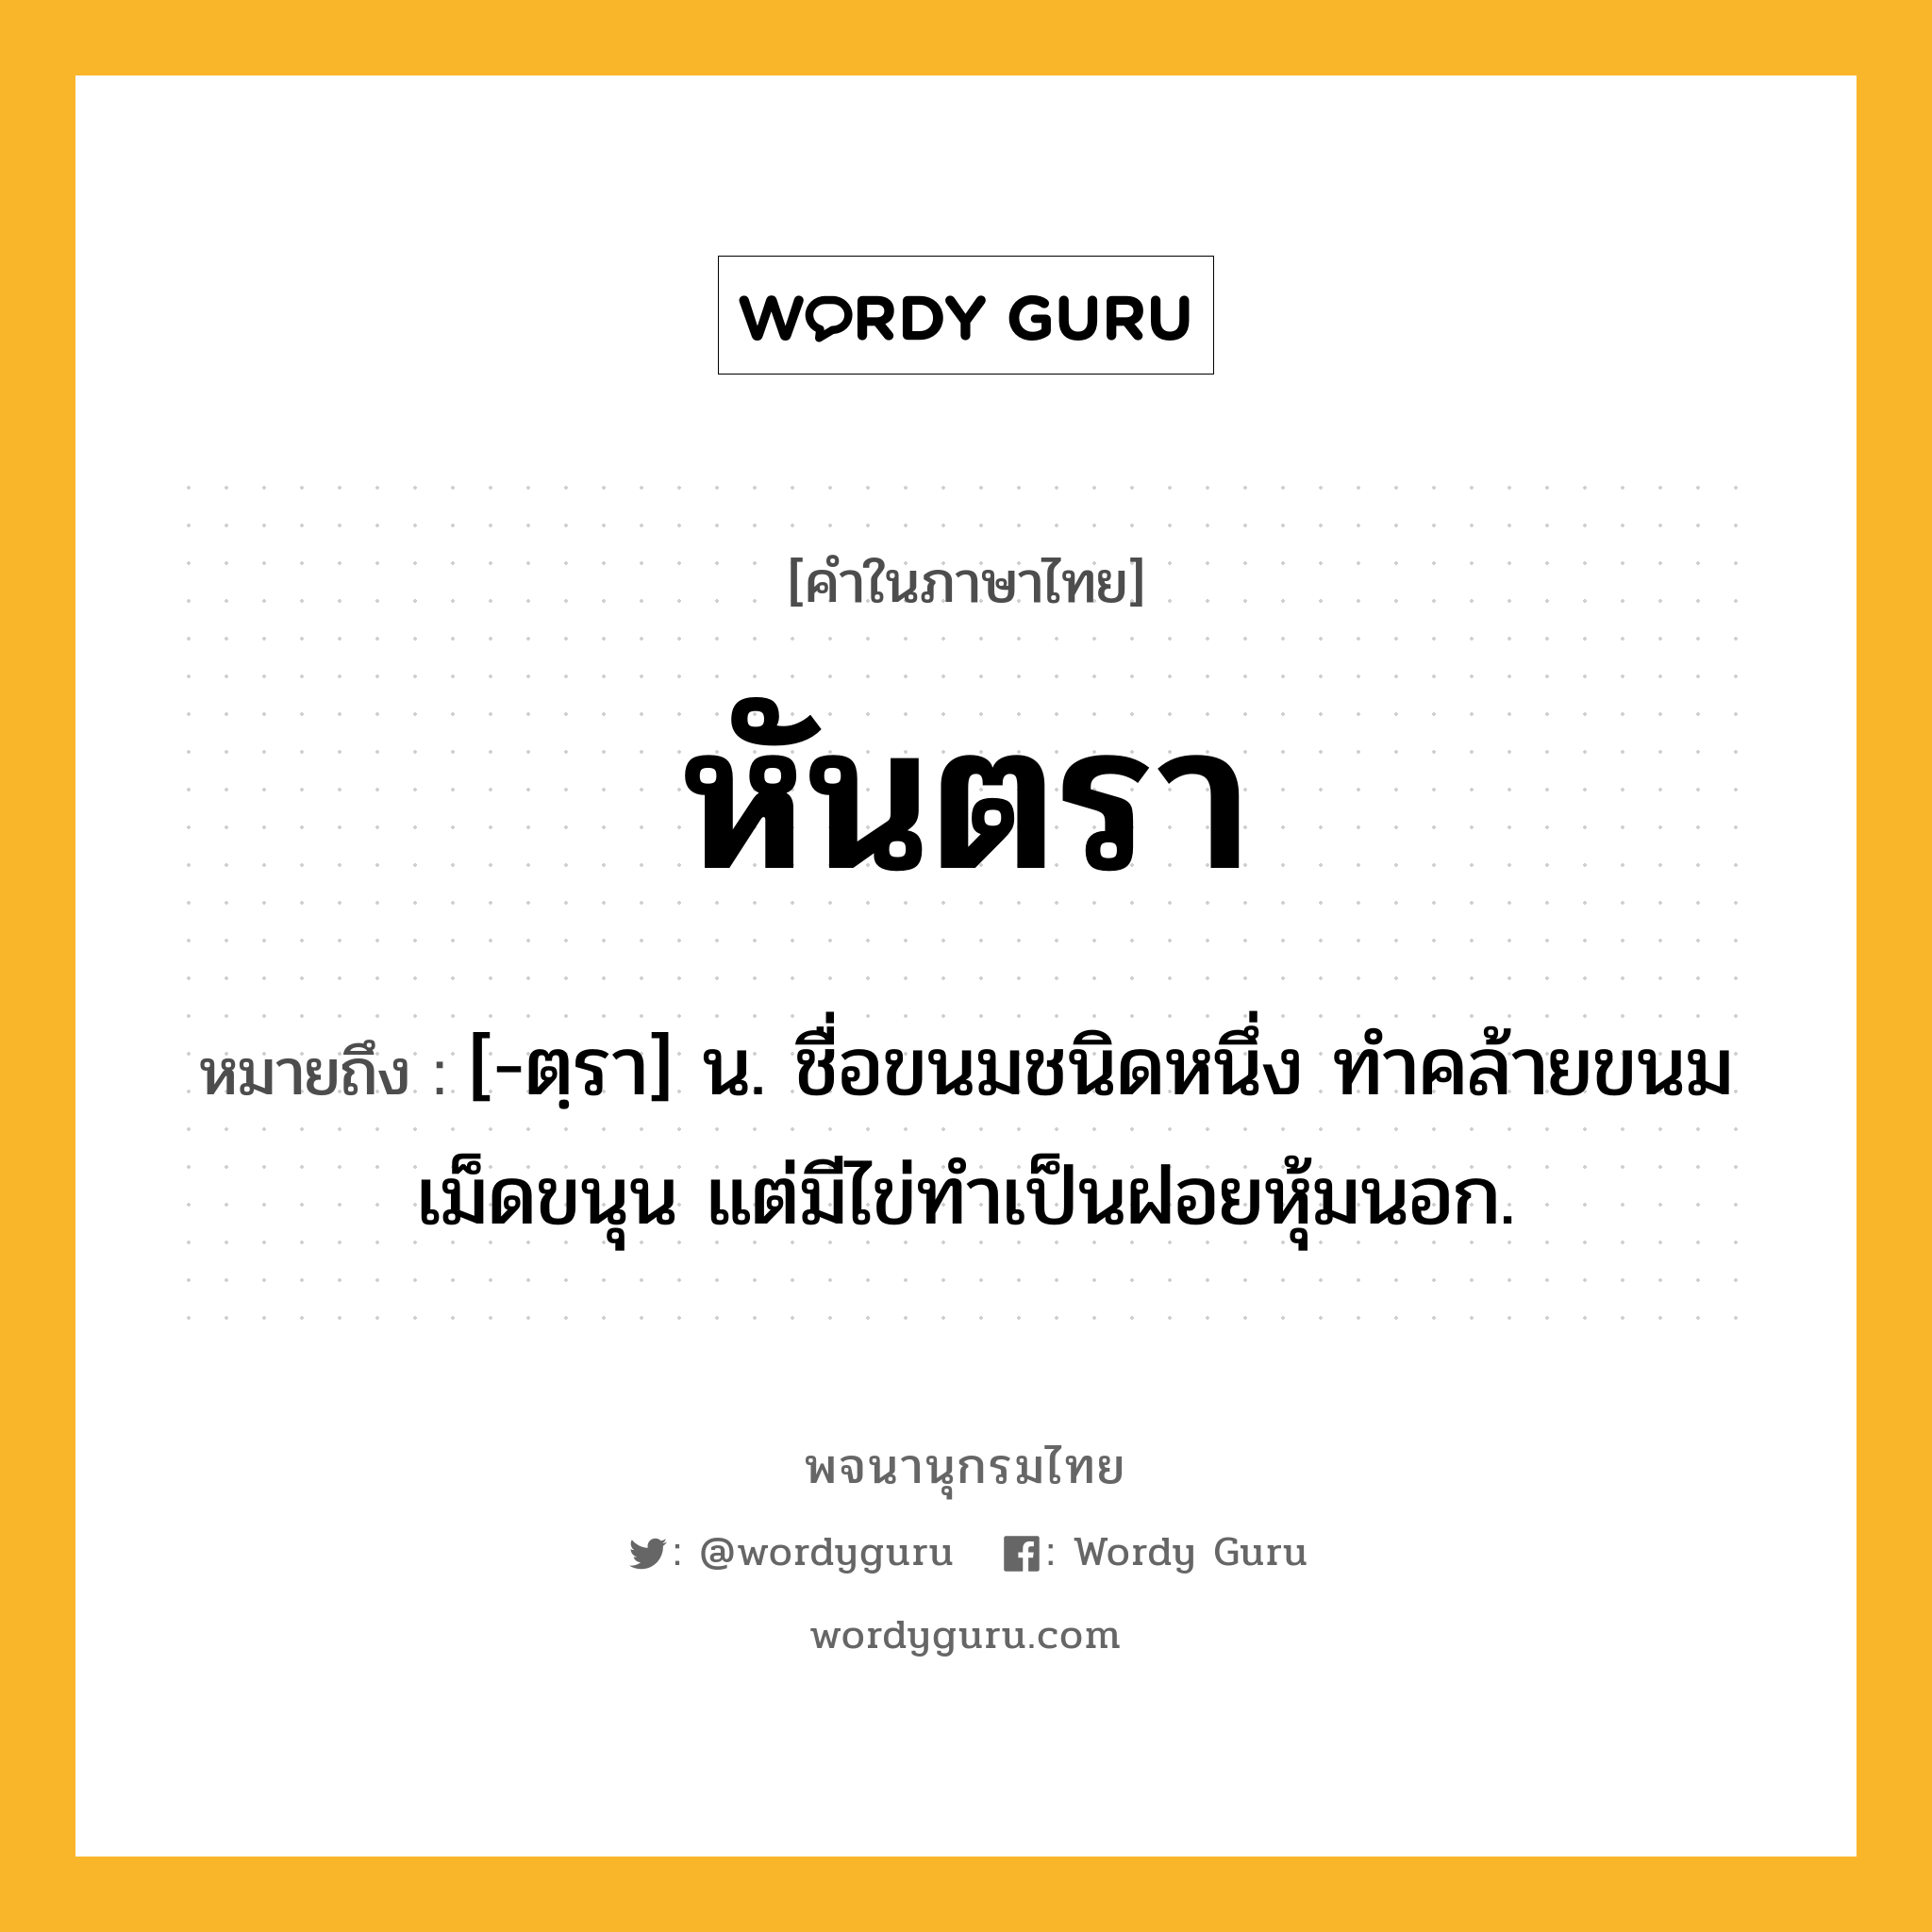 หันตรา ความหมาย หมายถึงอะไร?, คำในภาษาไทย หันตรา หมายถึง [-ตฺรา] น. ชื่อขนมชนิดหนึ่ง ทําคล้ายขนมเม็ดขนุน แต่มีไข่ทําเป็นฝอยหุ้มนอก.